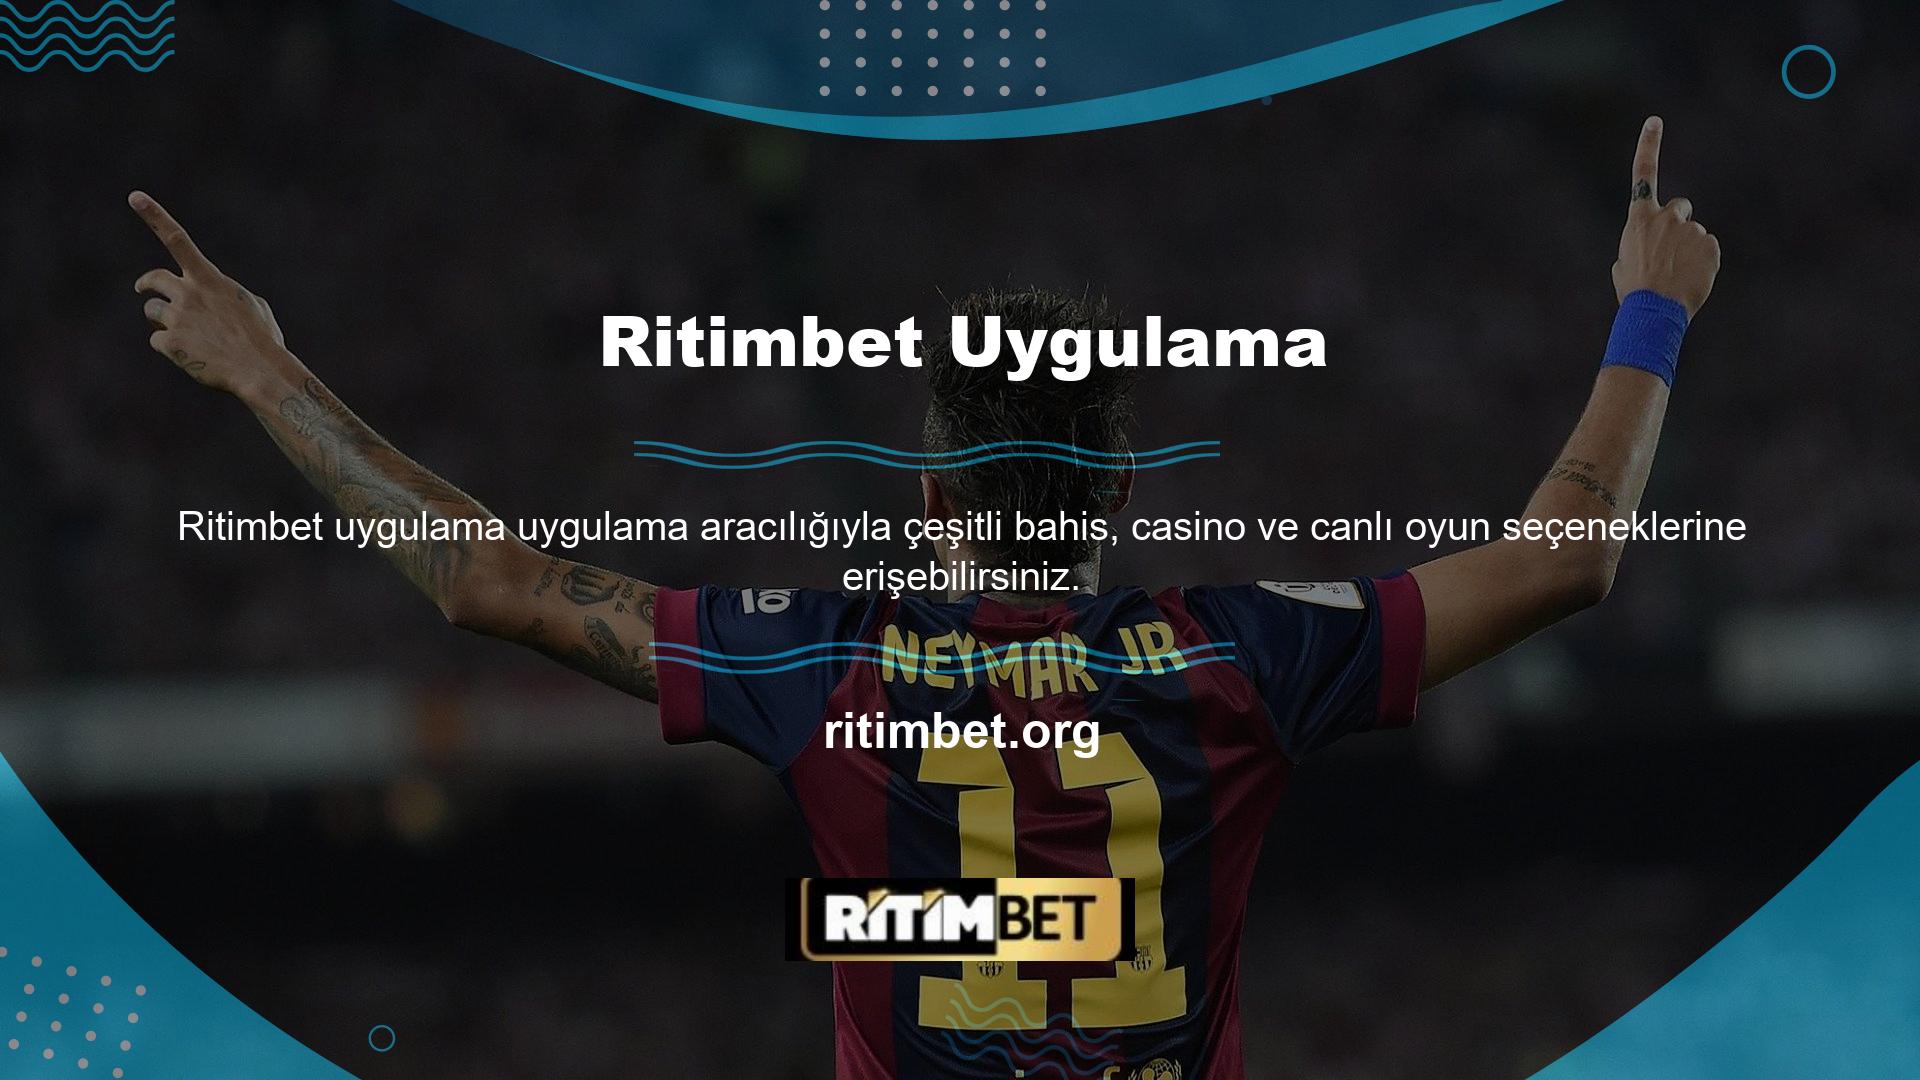 Ritimbet Mobile uygulaması oyun oynamayı basitleştirir ve kullanıcıların para kazanmasını sağlar